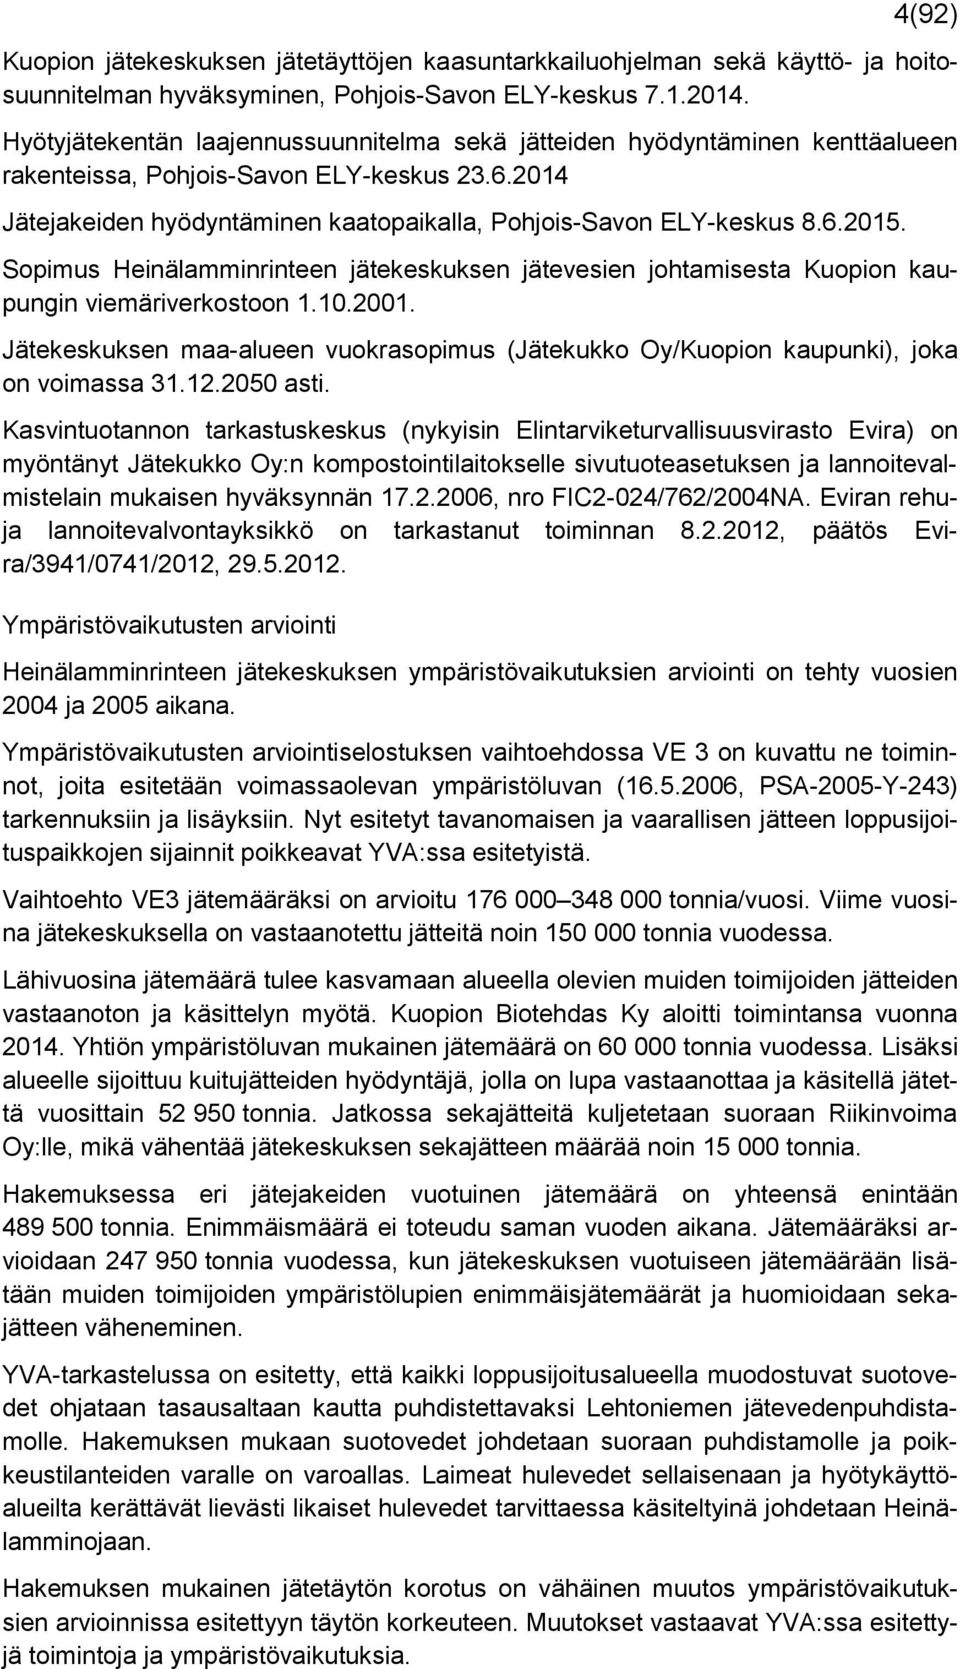 Sopimus Heinälamminrinteen jätekeskuksen jätevesien johtamisesta Kuopion kaupungin viemäriverkostoon 1.10.2001.